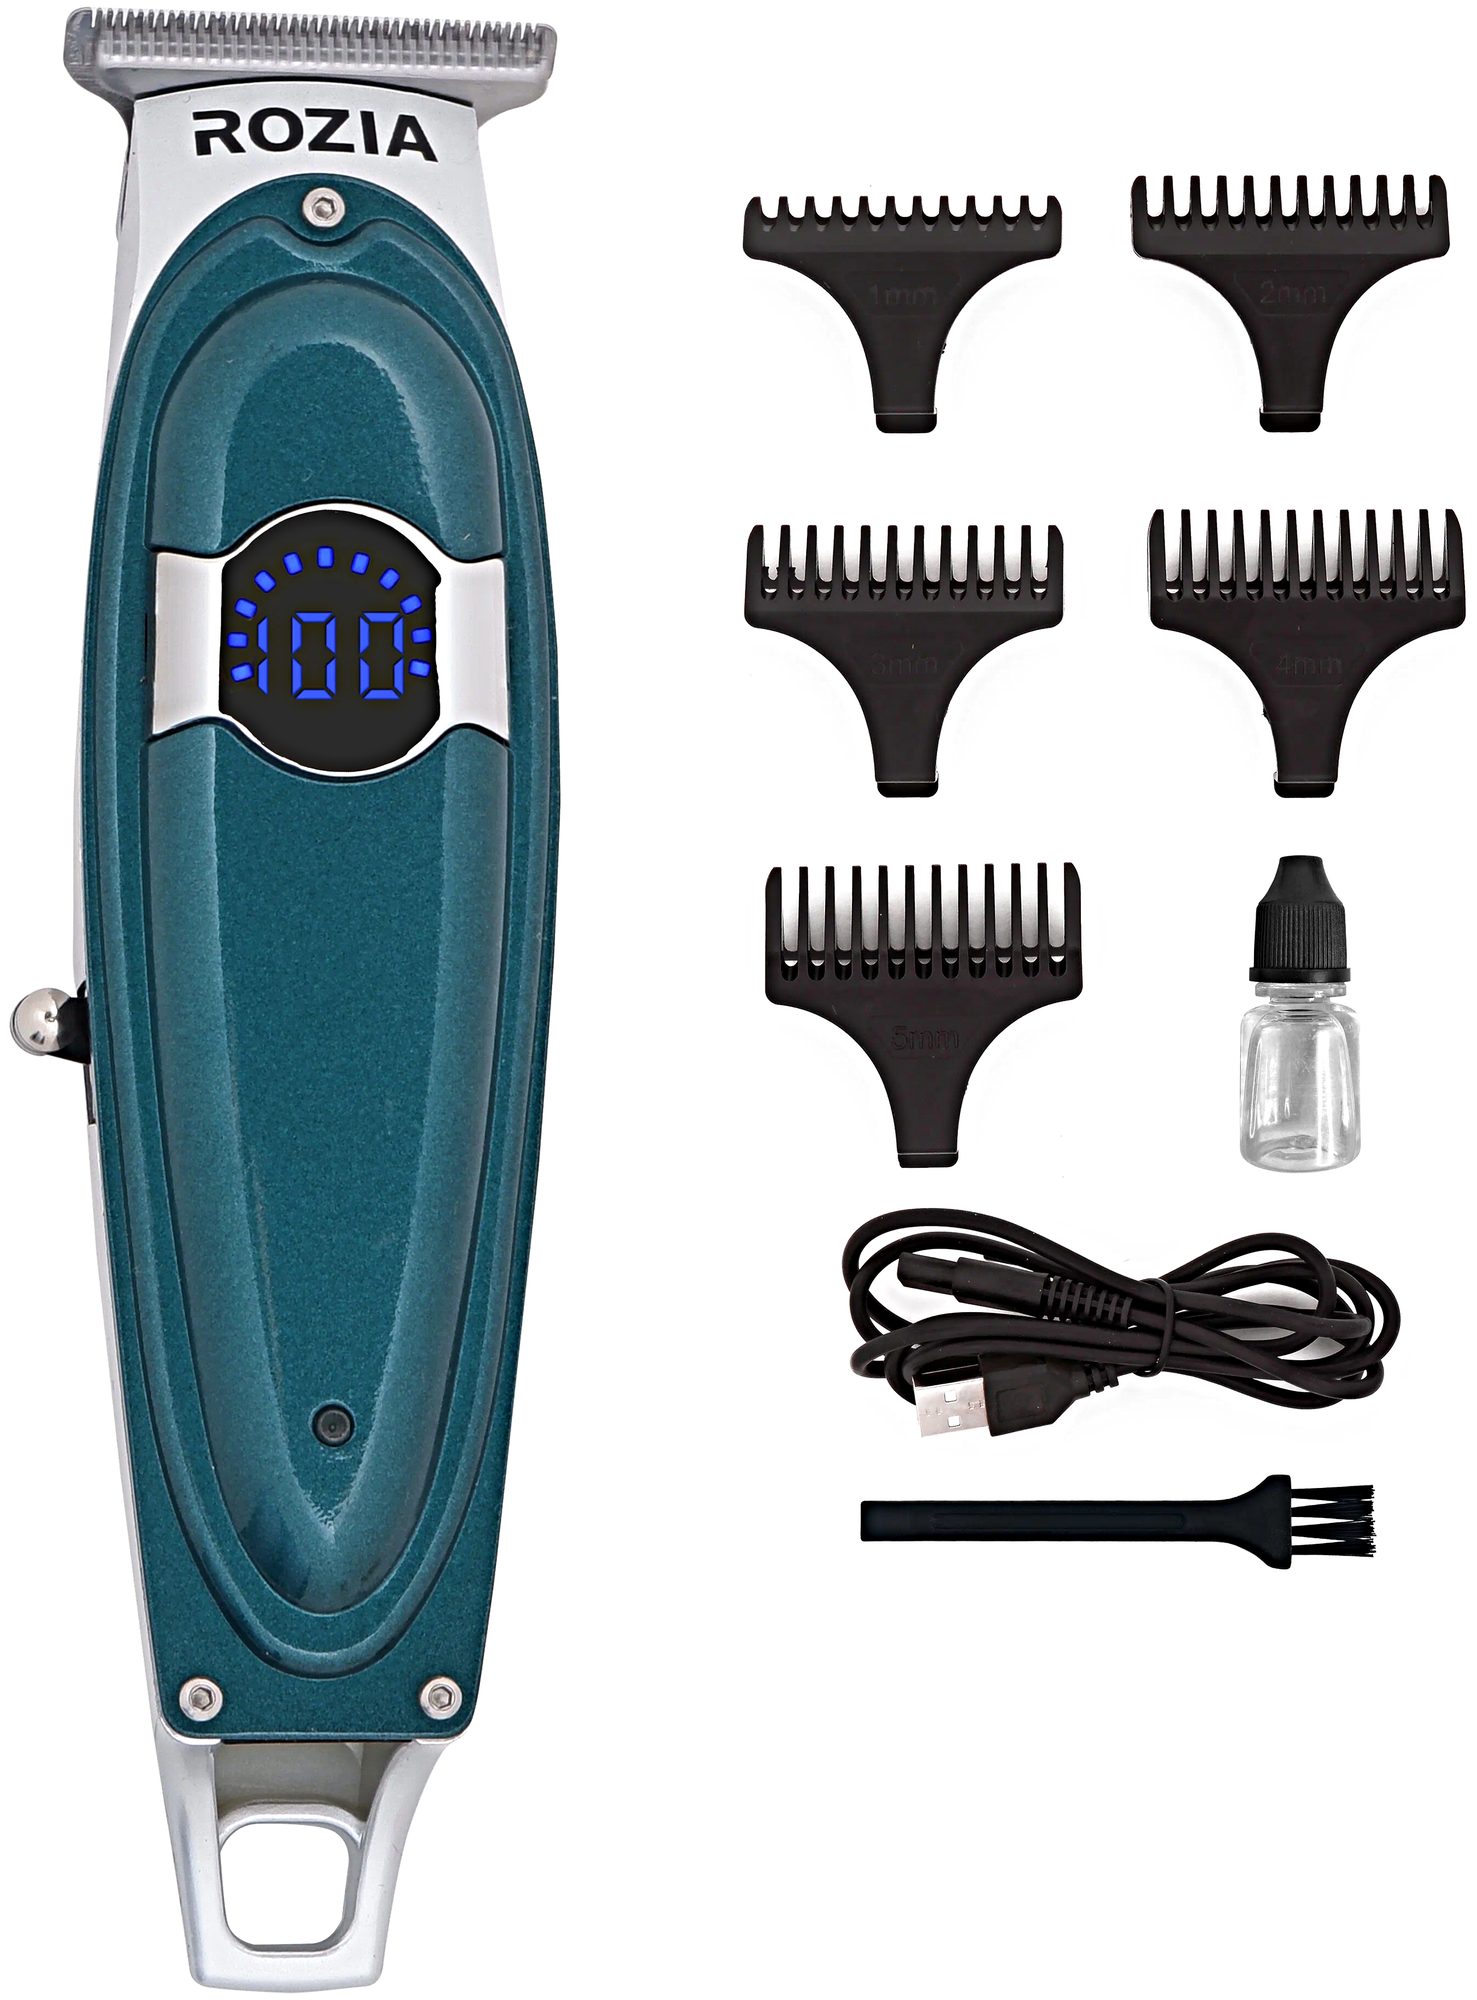 Машинка для стрижки волос HQ-322, Профессиональный триммер для стрижки волос, для бороды, усов, Зеленый